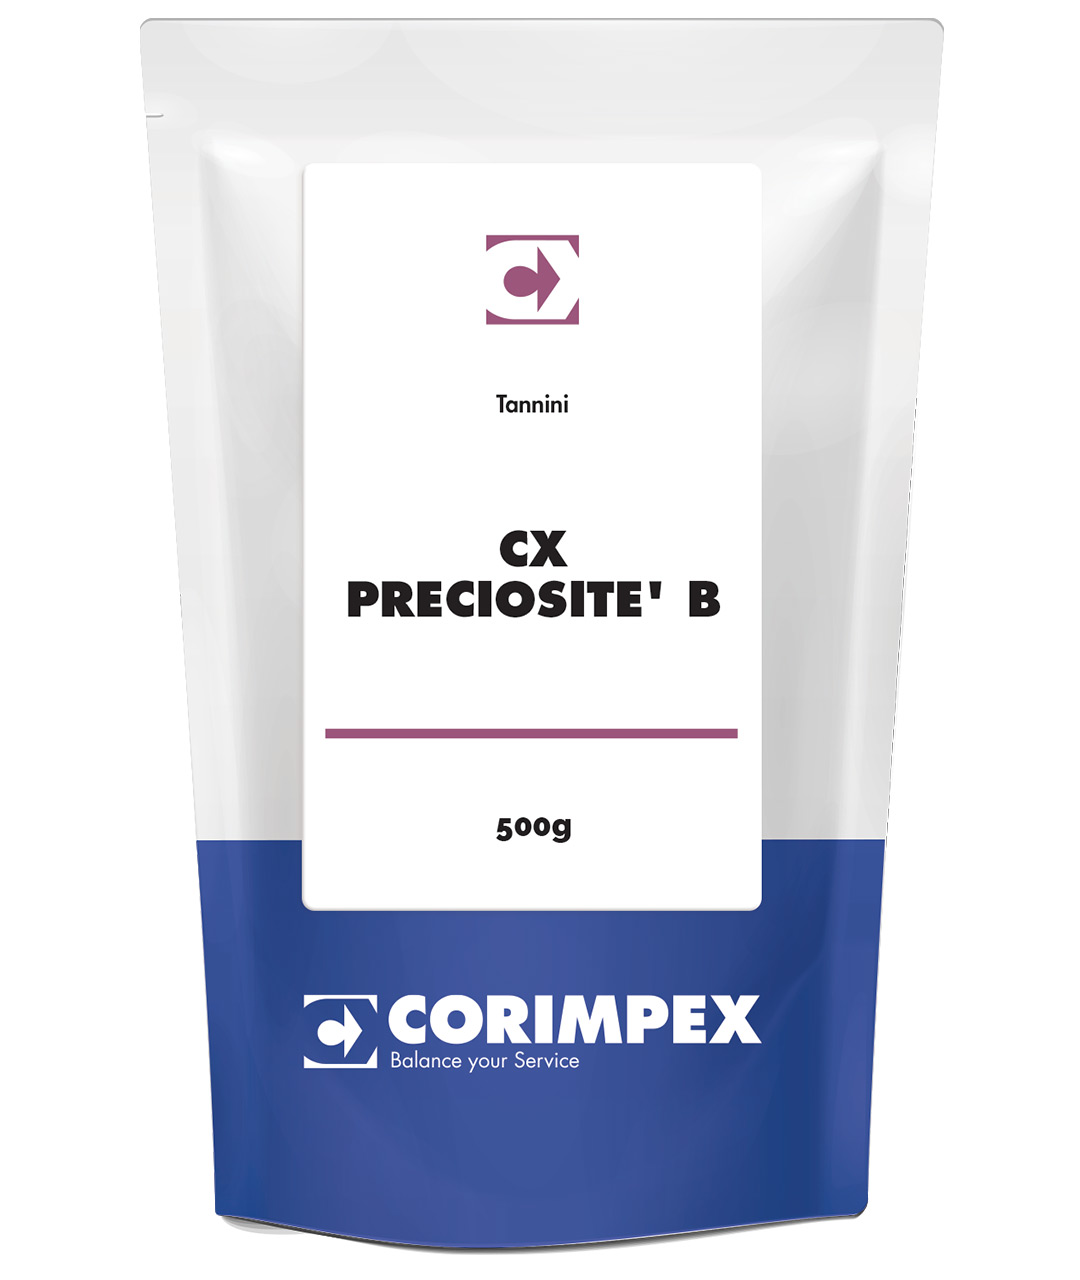 CX PRECIOSITE' B